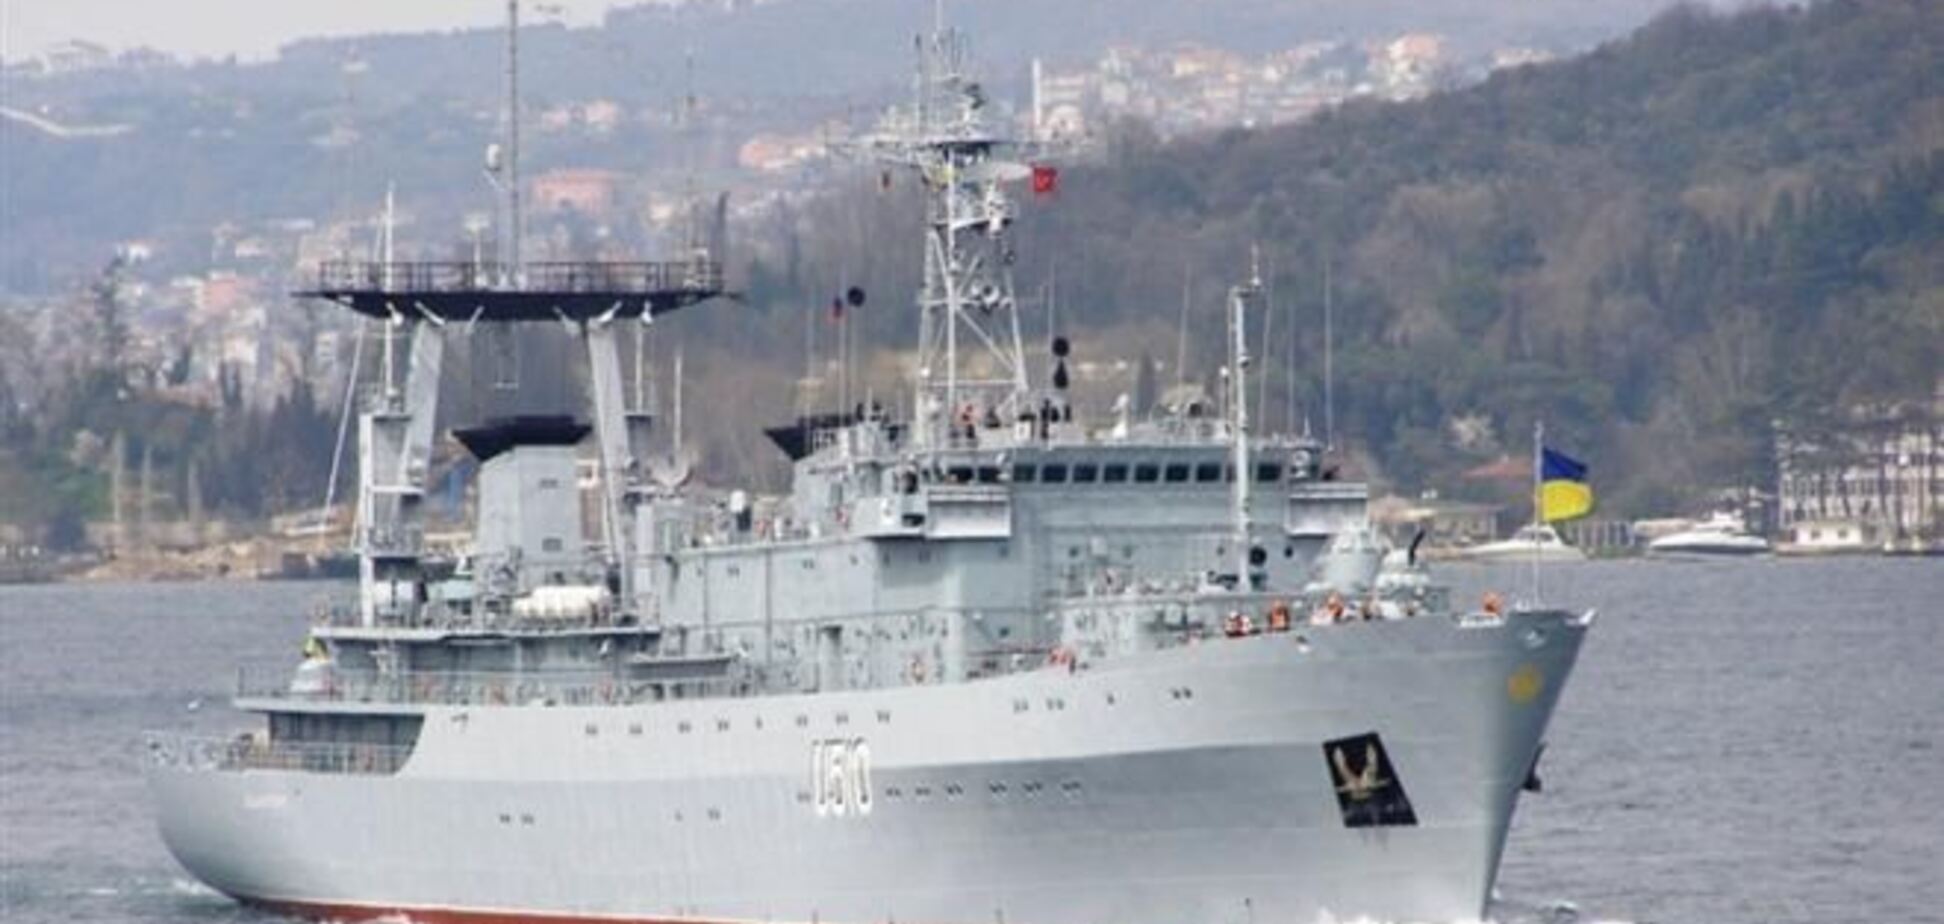 Личный состав корабля 'Славутич' дал силовой отпор захватчикам